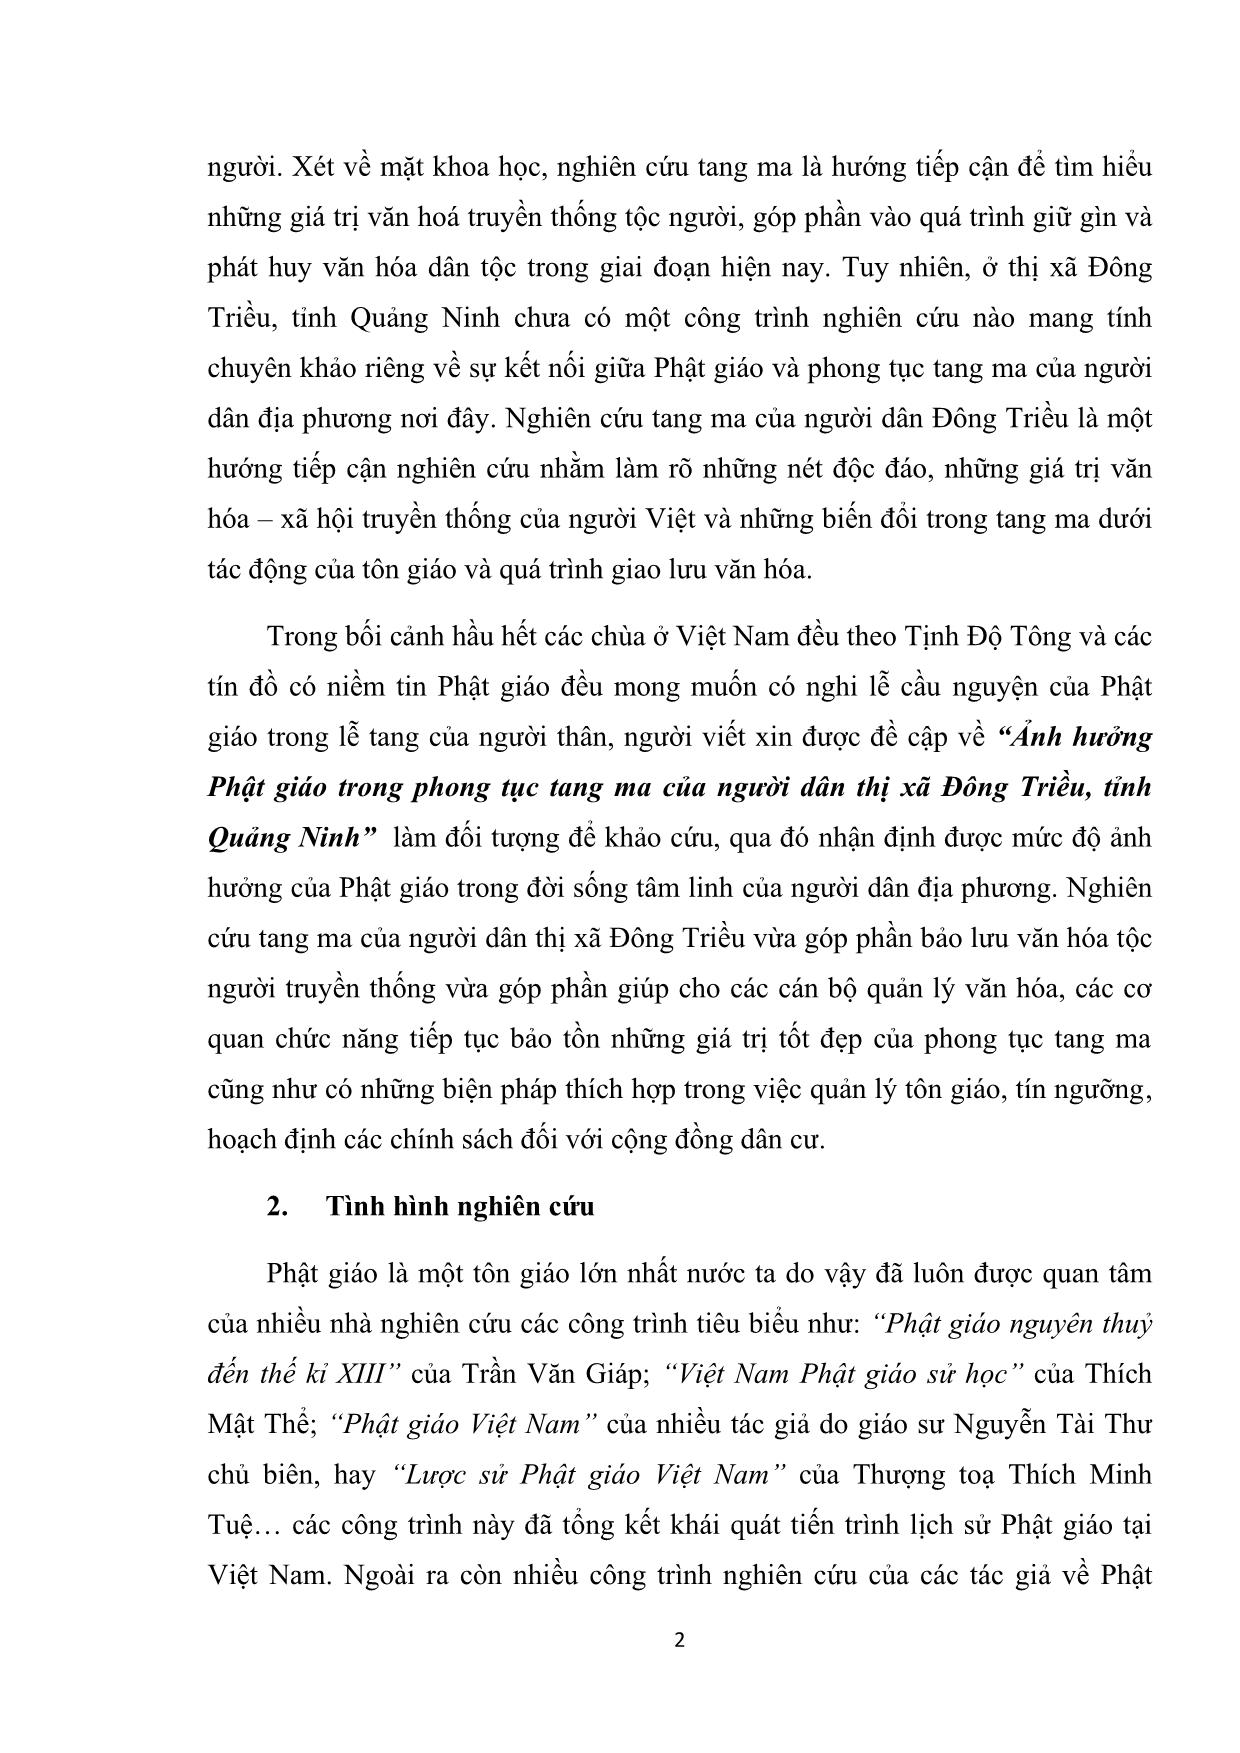 Khóa luận Ảnh hưởng của phật giáo trong phong tục tang ma tại thị xã Đông Triều, tỉnh Quảng Ninh trang 8